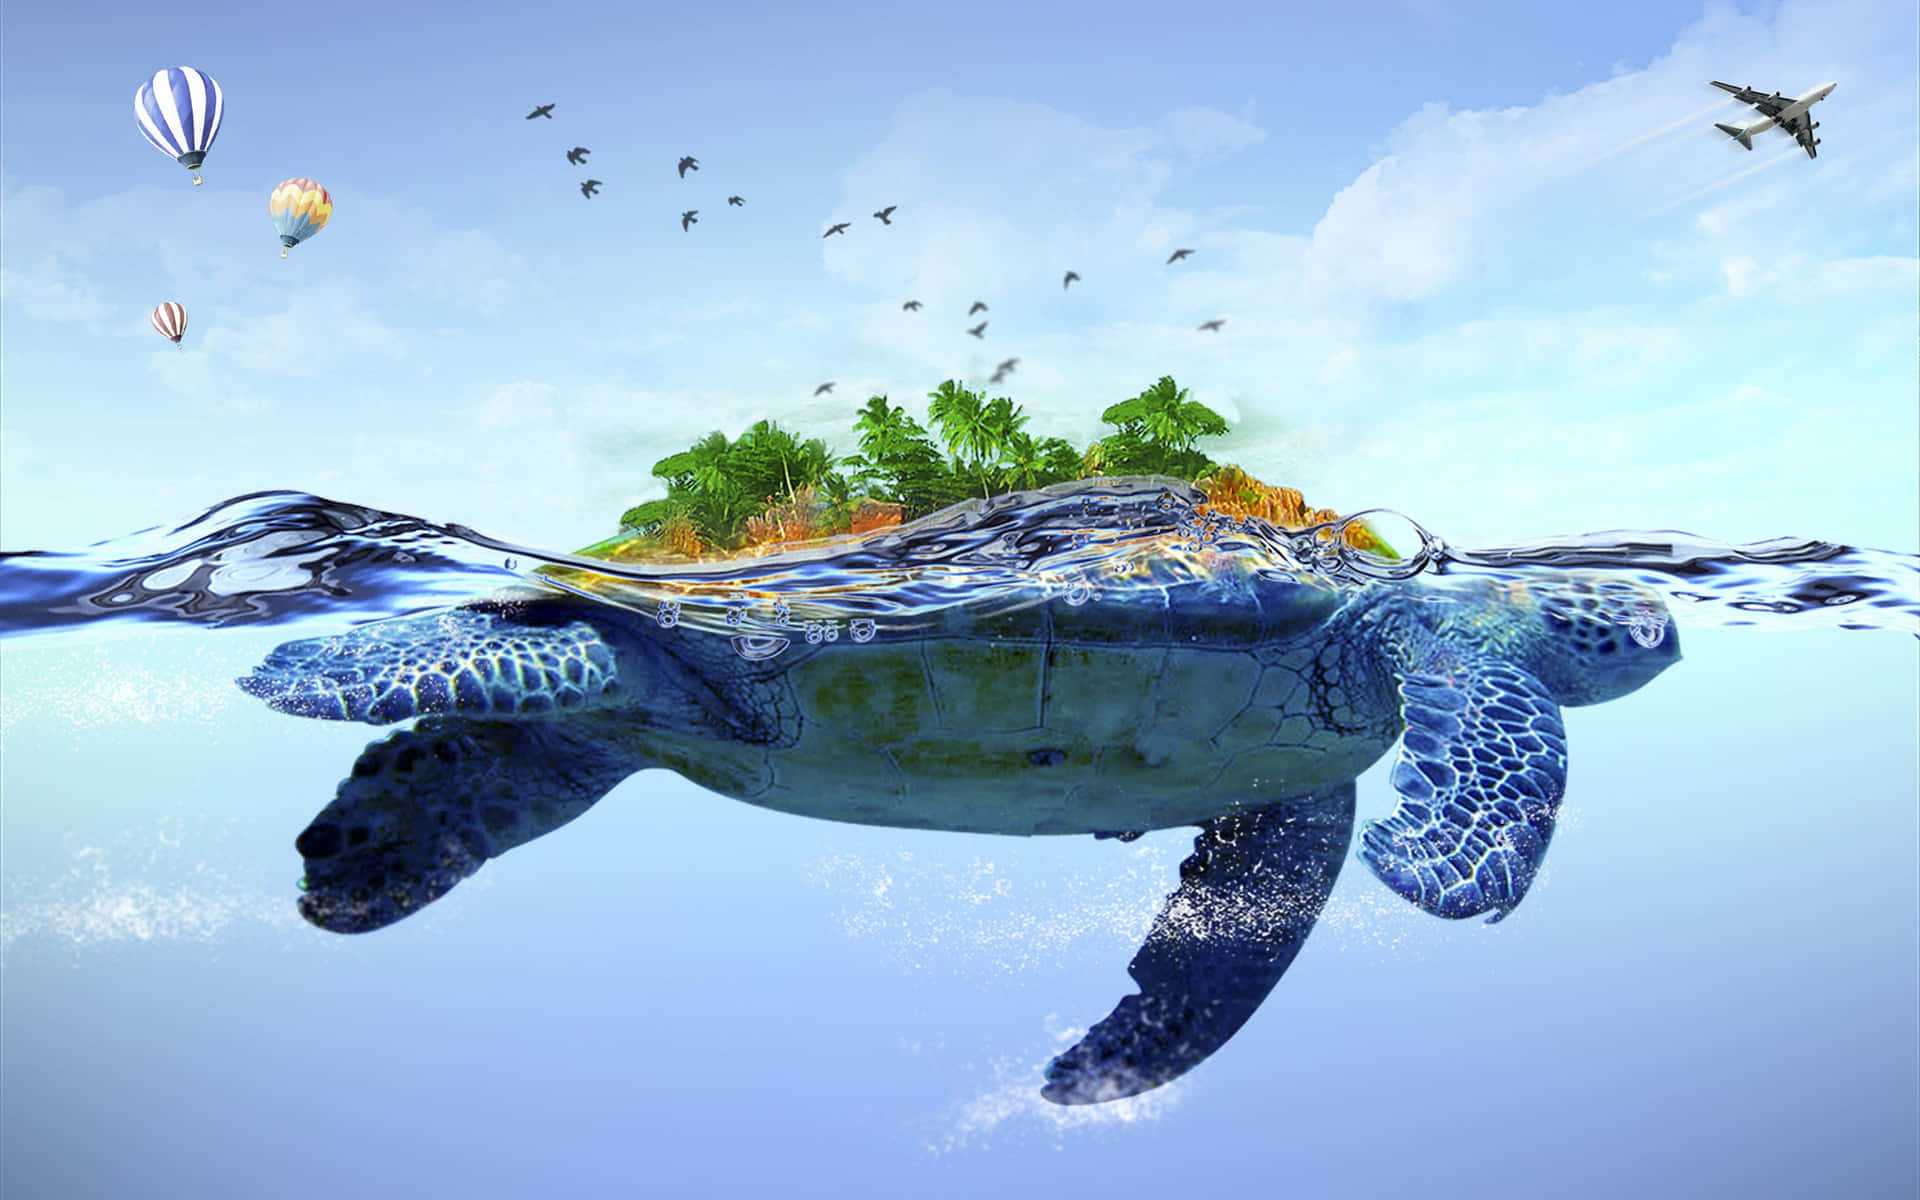 Enskildpadde, Der Svømmer I Havet Med Et Træ Og Balloner.